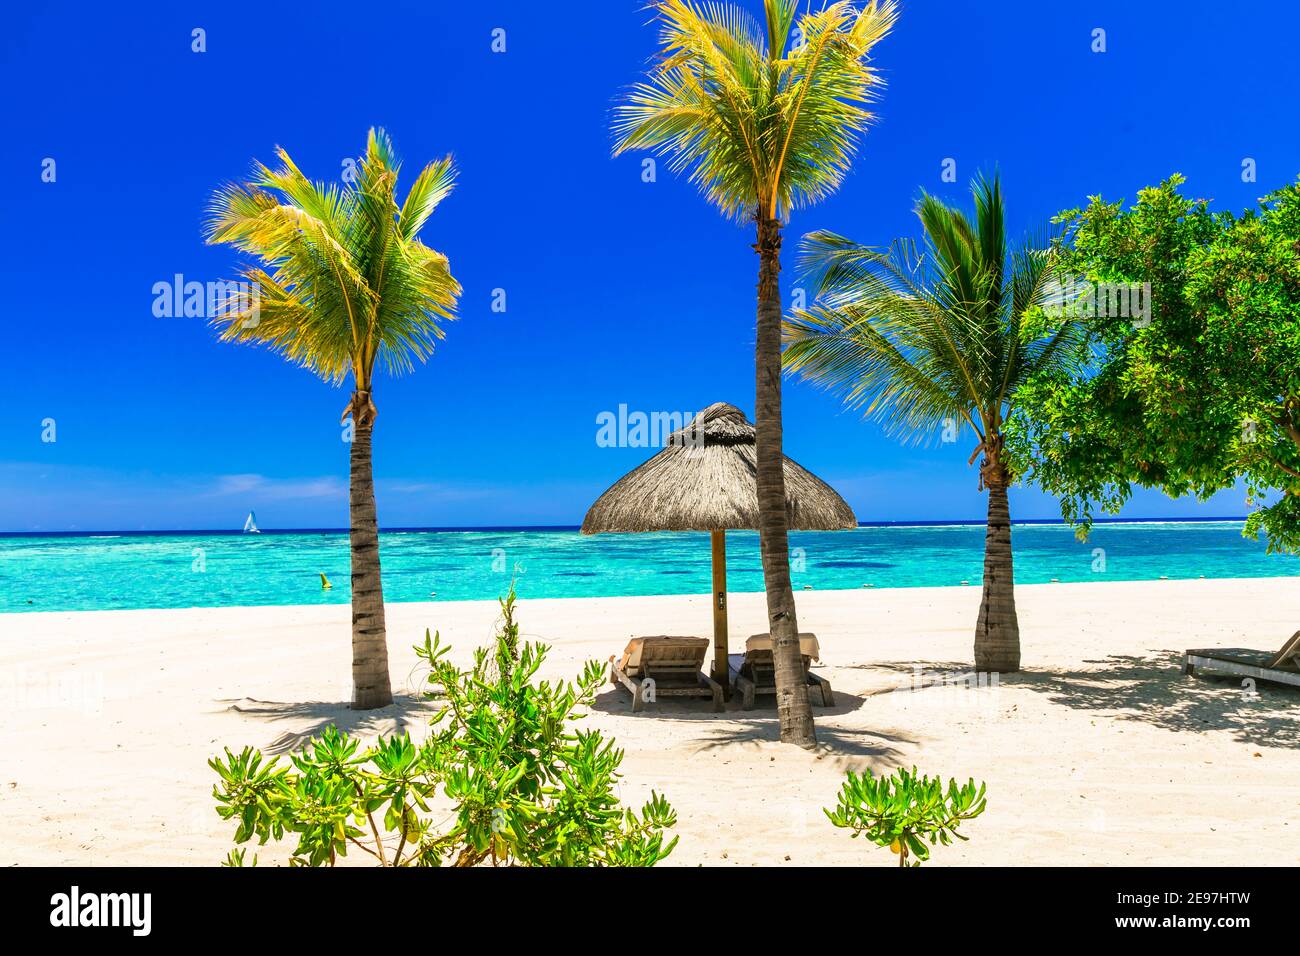 rilassante scenario tropicale sulla spiaggia, con sedie a sdraio sotto le palme Foto Stock